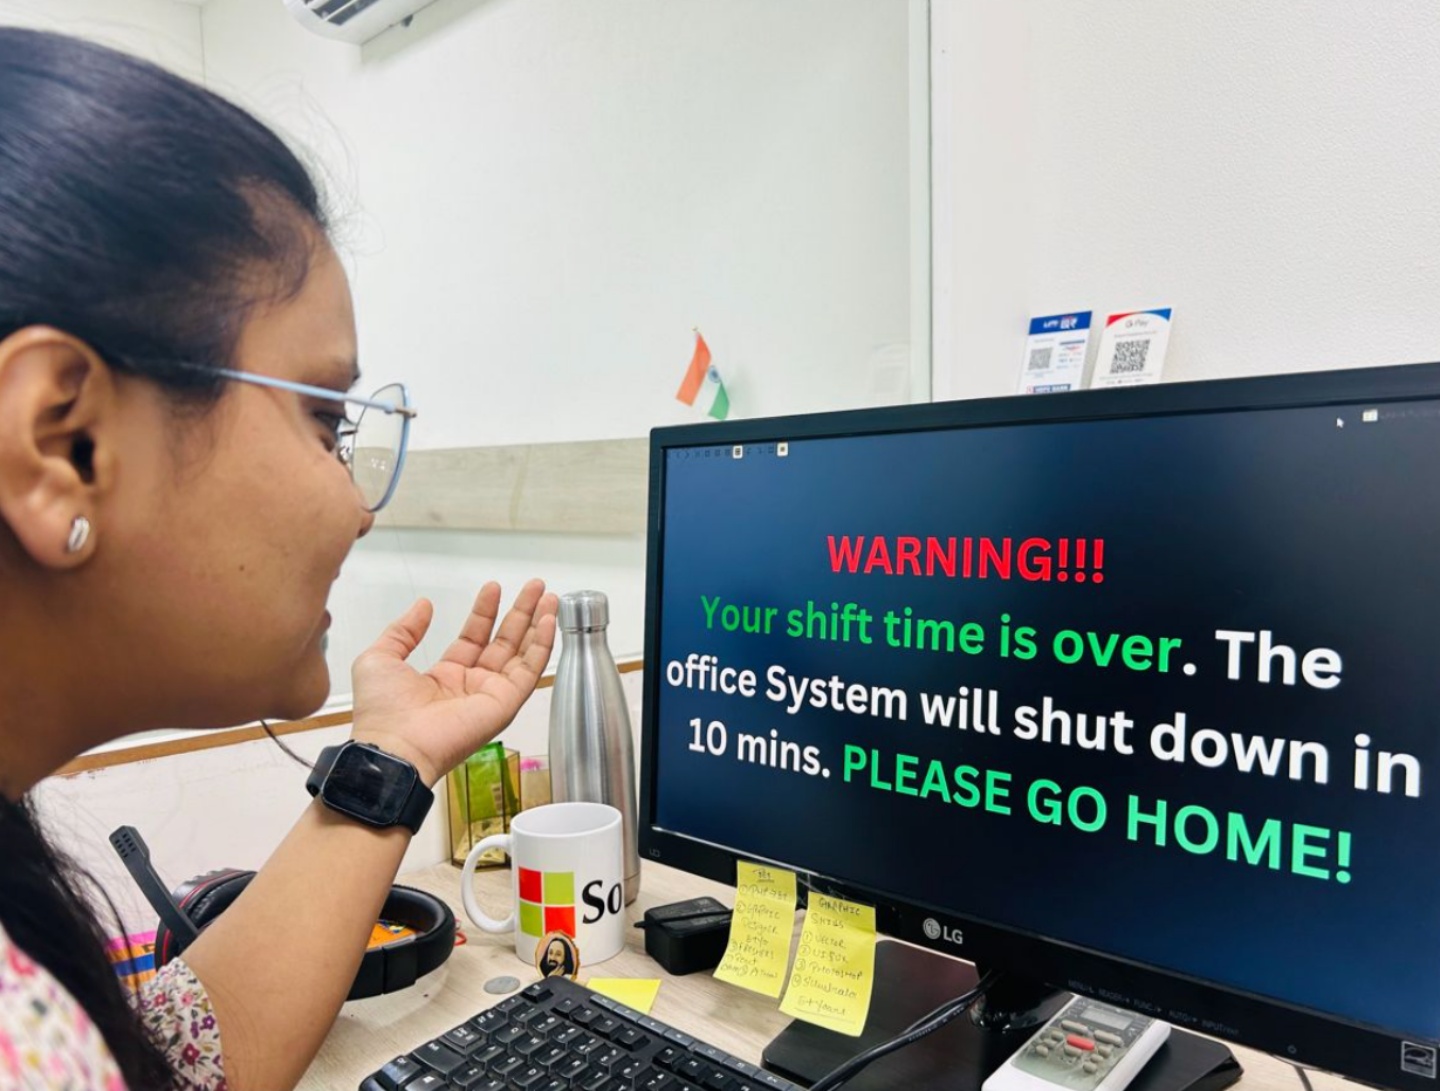 下班時間已到請回家！印度新創公司設定『 下班提醒 』10 分鐘內沒離開 電腦就會自動關機